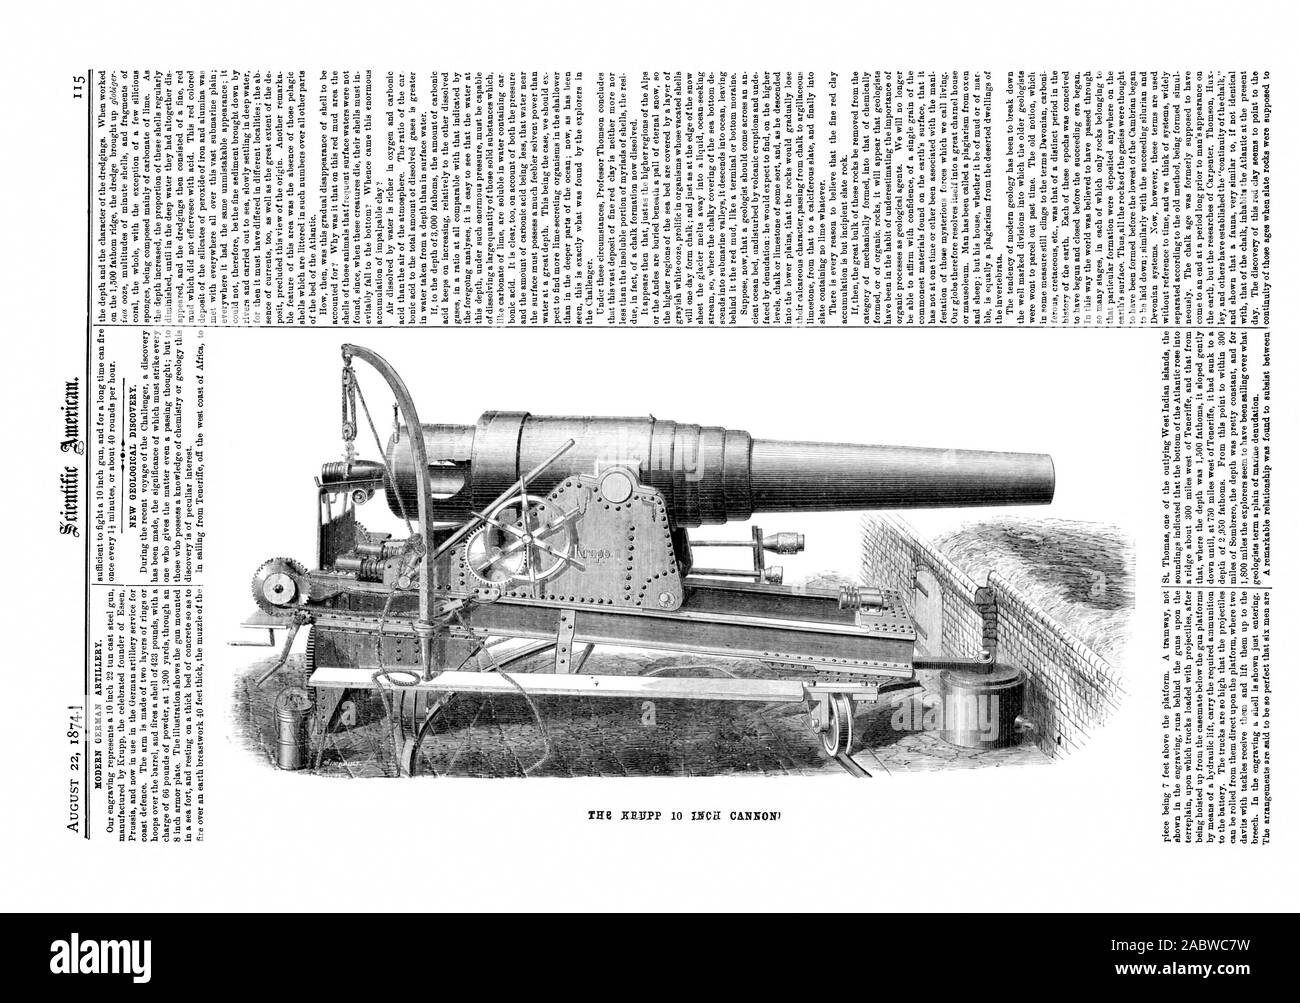 22 août 1874.1 de l'artillerie allemande moderne. Nouvelle découverte géologique. tliOIDIVO PORI OT Aleria2Z, Scientific American, 1874-08-22, le canon de 10 pouces Krupp Banque D'Images